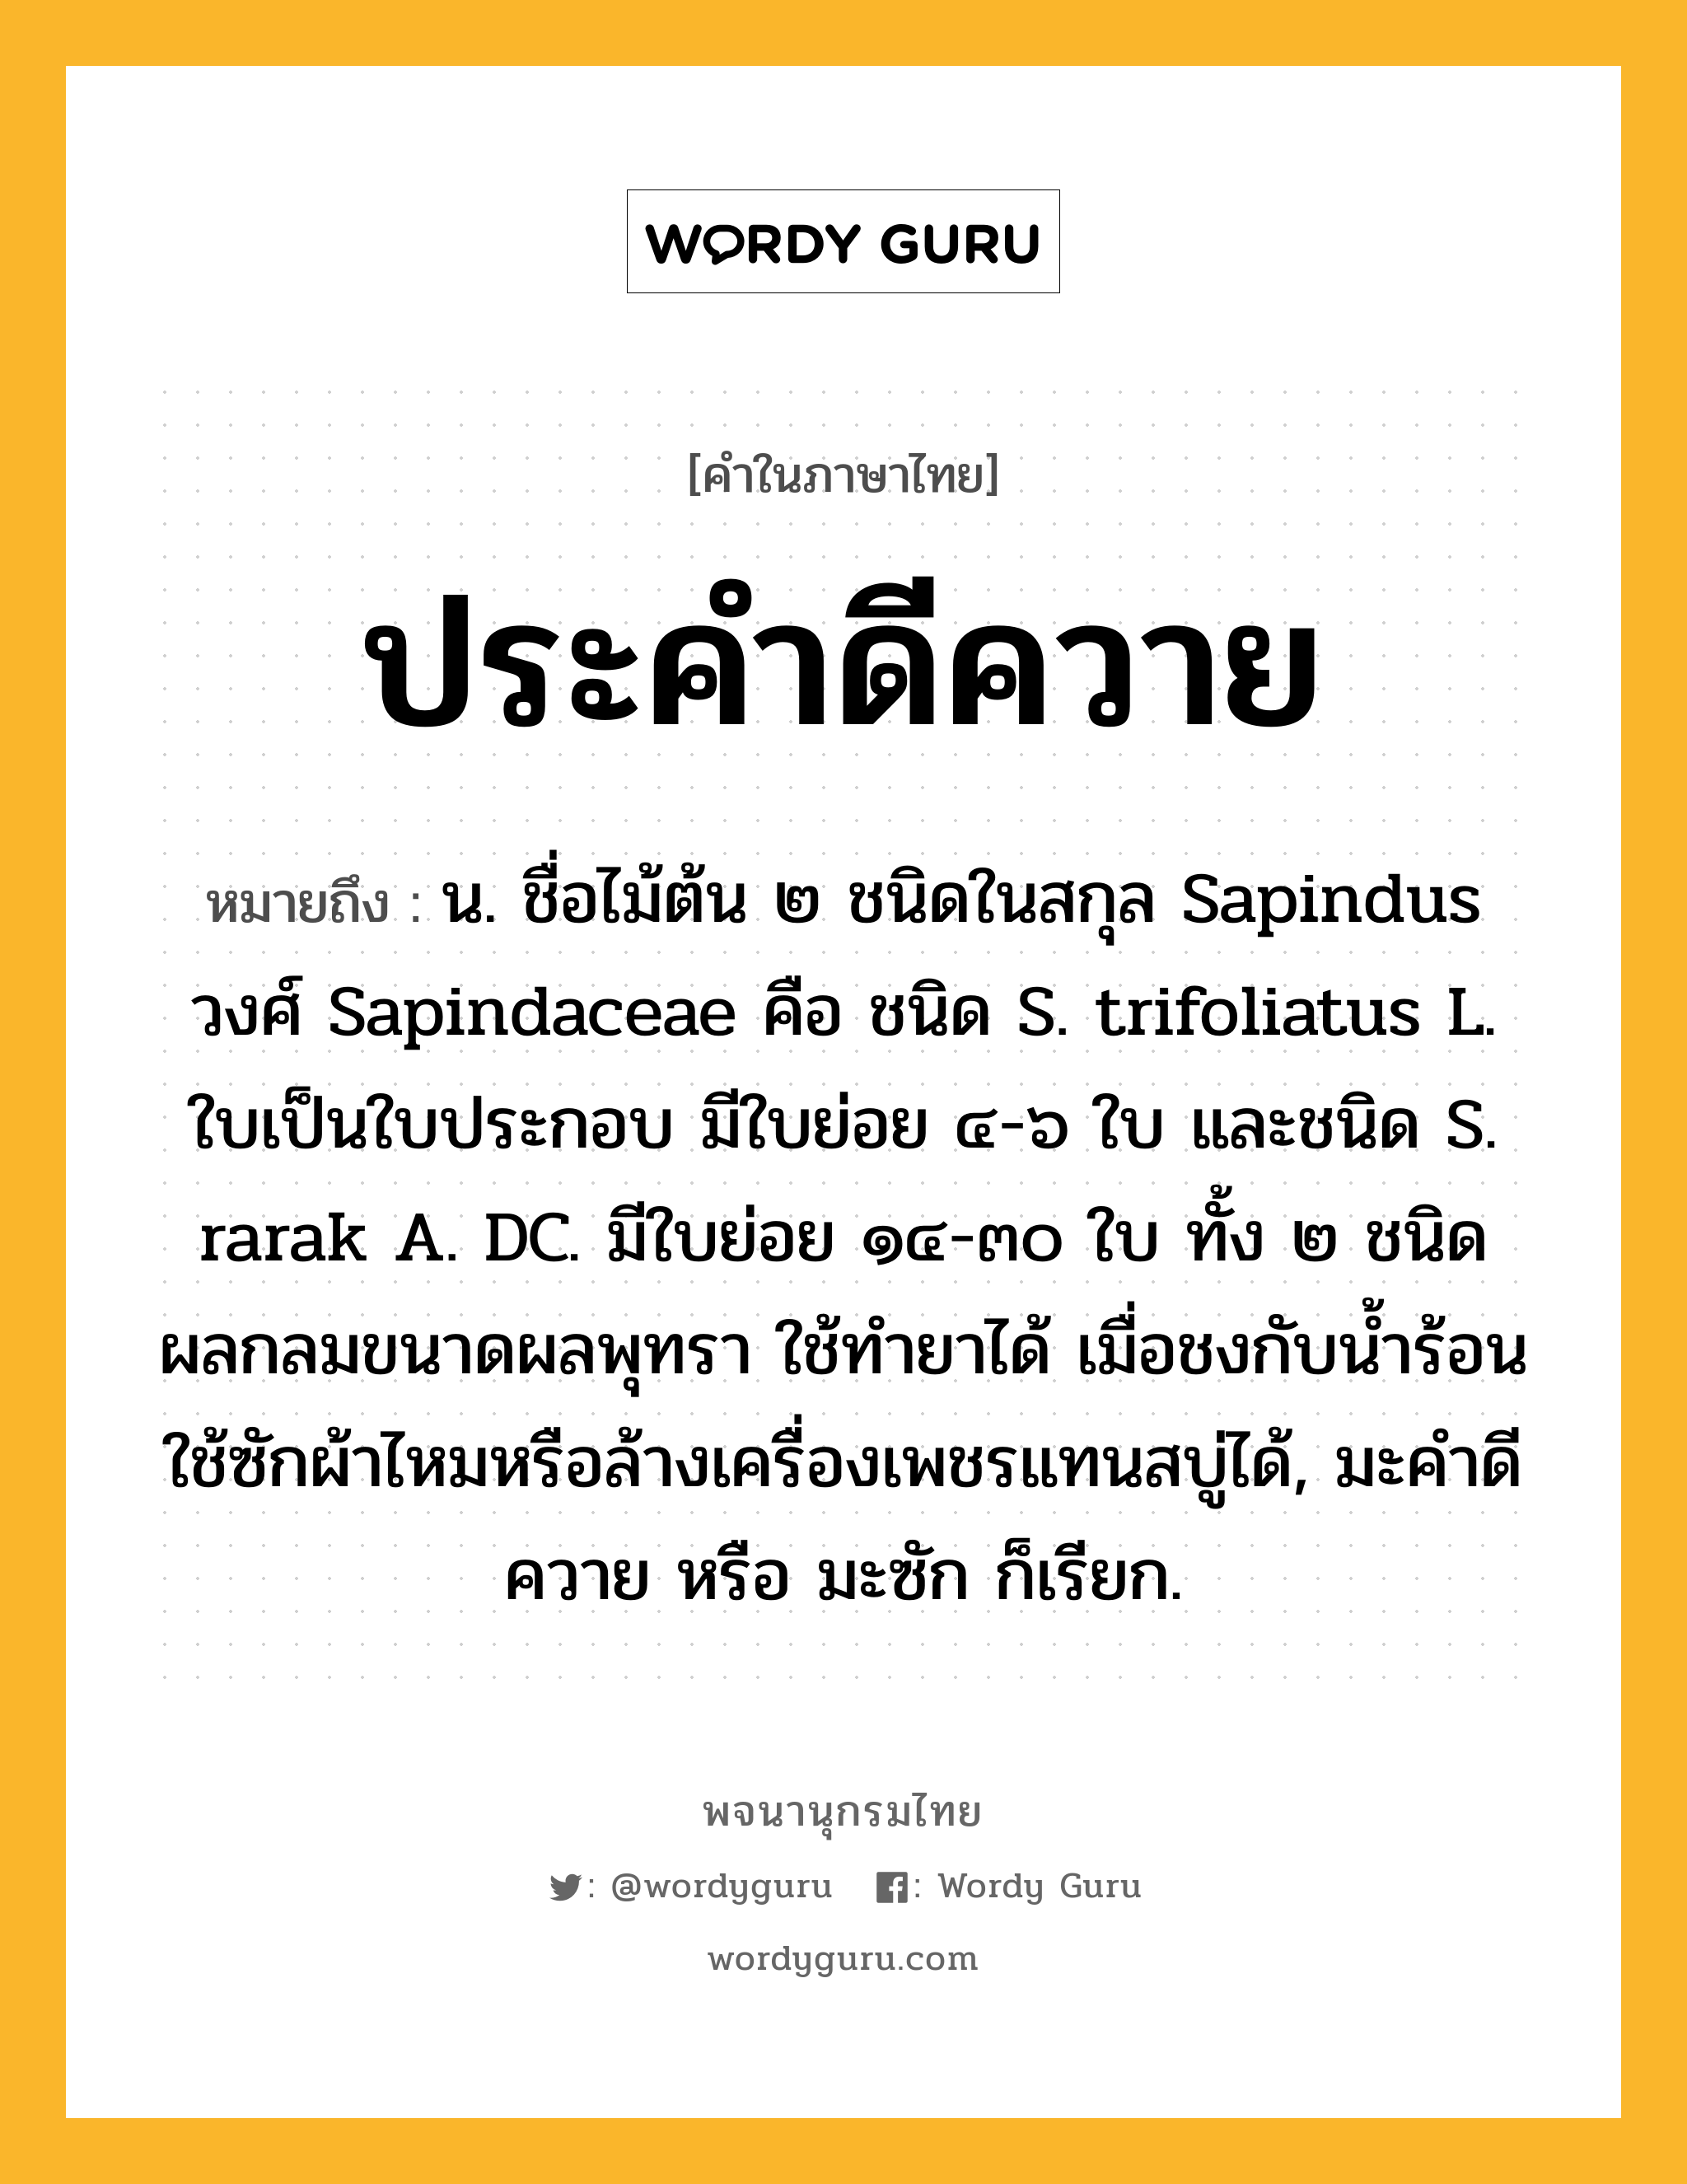 ประคำดีควาย หมายถึงอะไร?, คำในภาษาไทย ประคำดีควาย หมายถึง น. ชื่อไม้ต้น ๒ ชนิดในสกุล Sapindus วงศ์ Sapindaceae คือ ชนิด S. trifoliatus L. ใบเป็นใบประกอบ มีใบย่อย ๔-๖ ใบ และชนิด S. rarak A. DC. มีใบย่อย ๑๔-๓๐ ใบ ทั้ง ๒ ชนิดผลกลมขนาดผลพุทรา ใช้ทํายาได้ เมื่อชงกับนํ้าร้อน ใช้ซักผ้าไหมหรือล้างเครื่องเพชรแทนสบู่ได้, มะคําดีควาย หรือ มะซัก ก็เรียก.